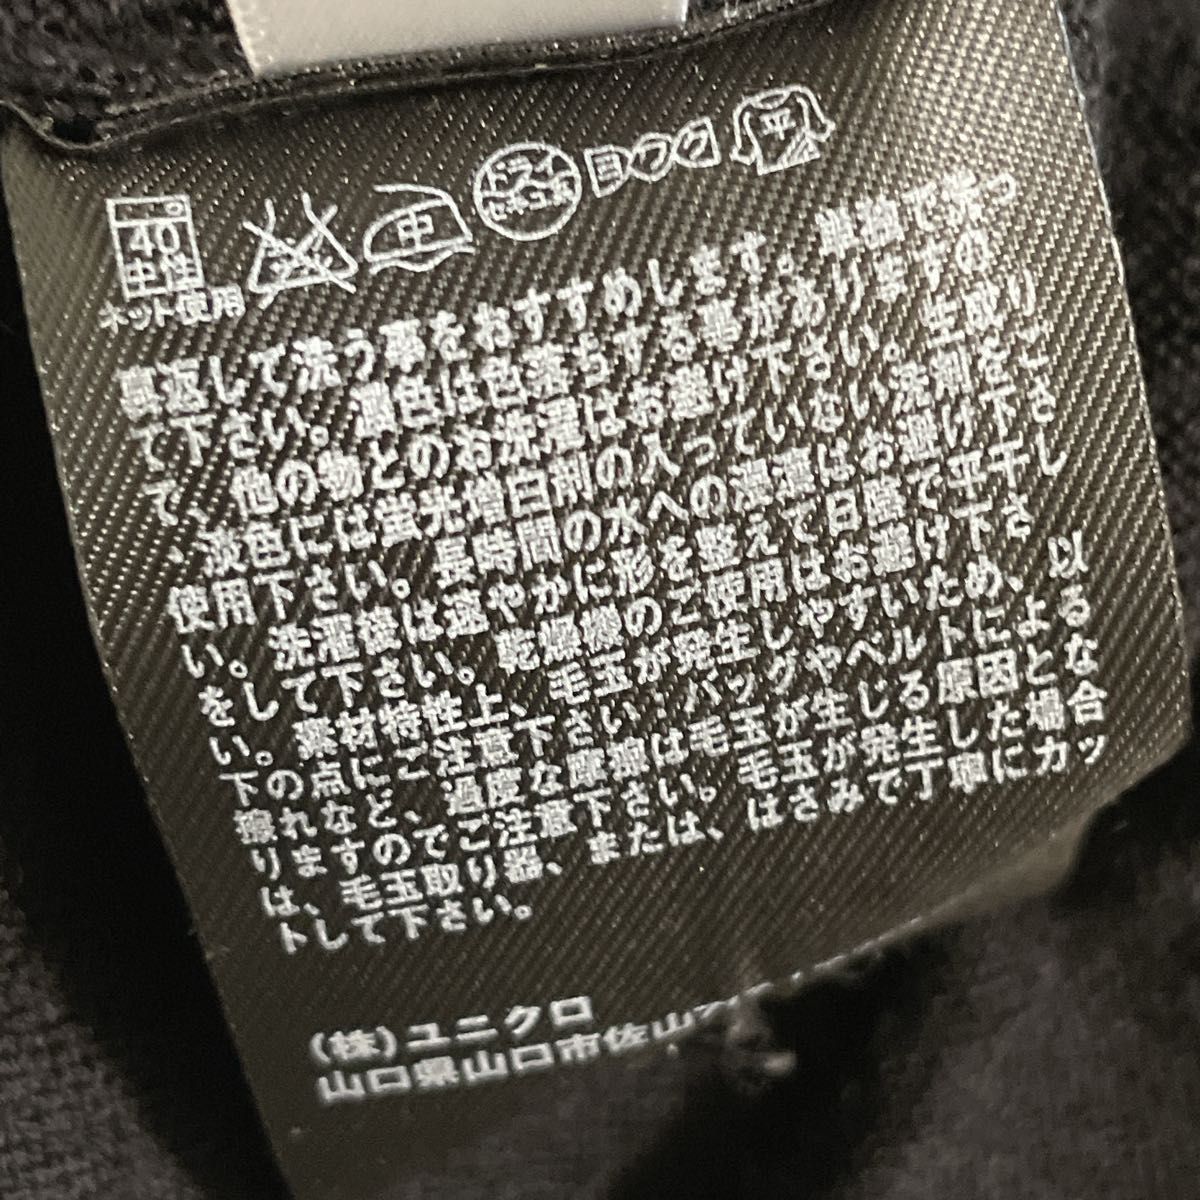 再お値下げ ユニクロ 薄手カーディガン Pure new wool ウール100% ブラック(コメントから)